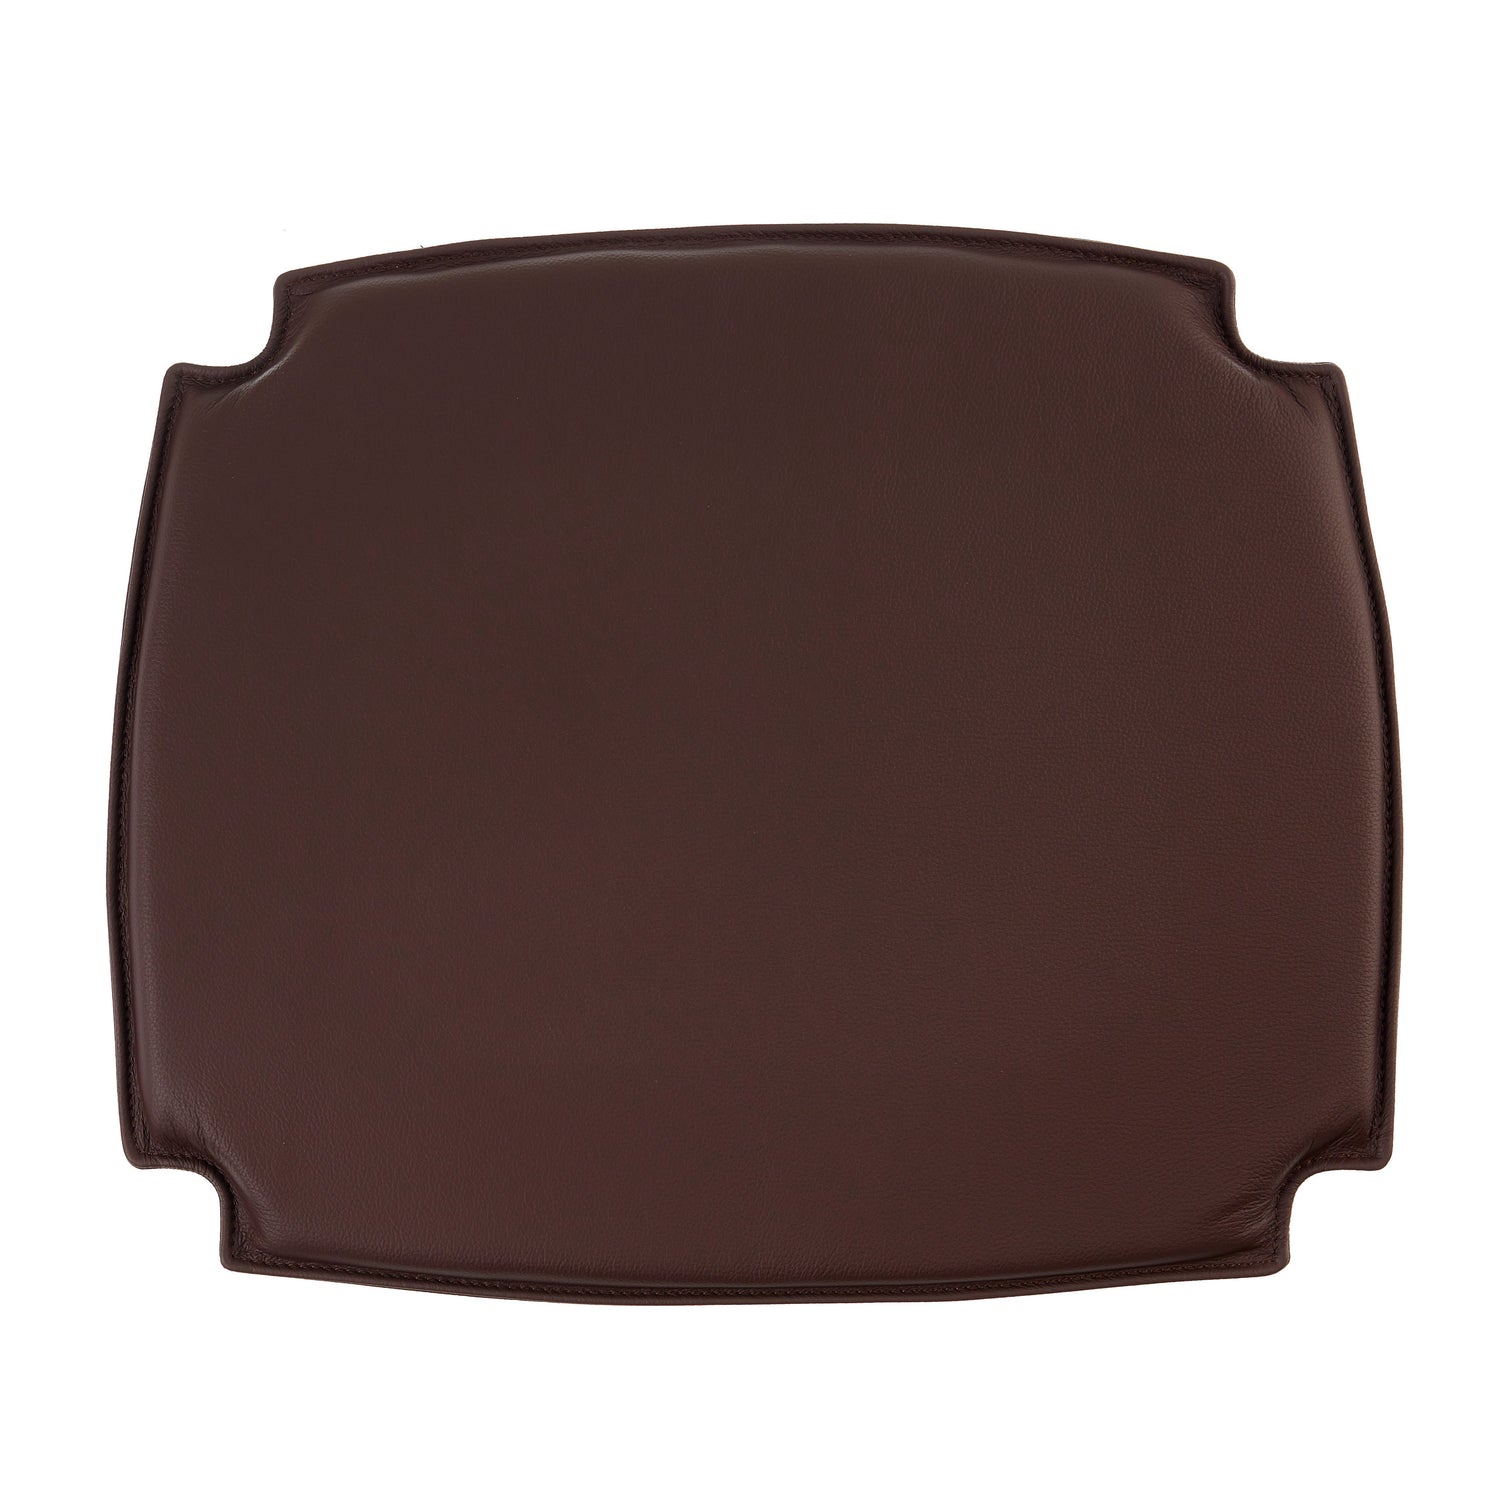 Cushion to Børge Mogensen BM1 chair in dark brown leather